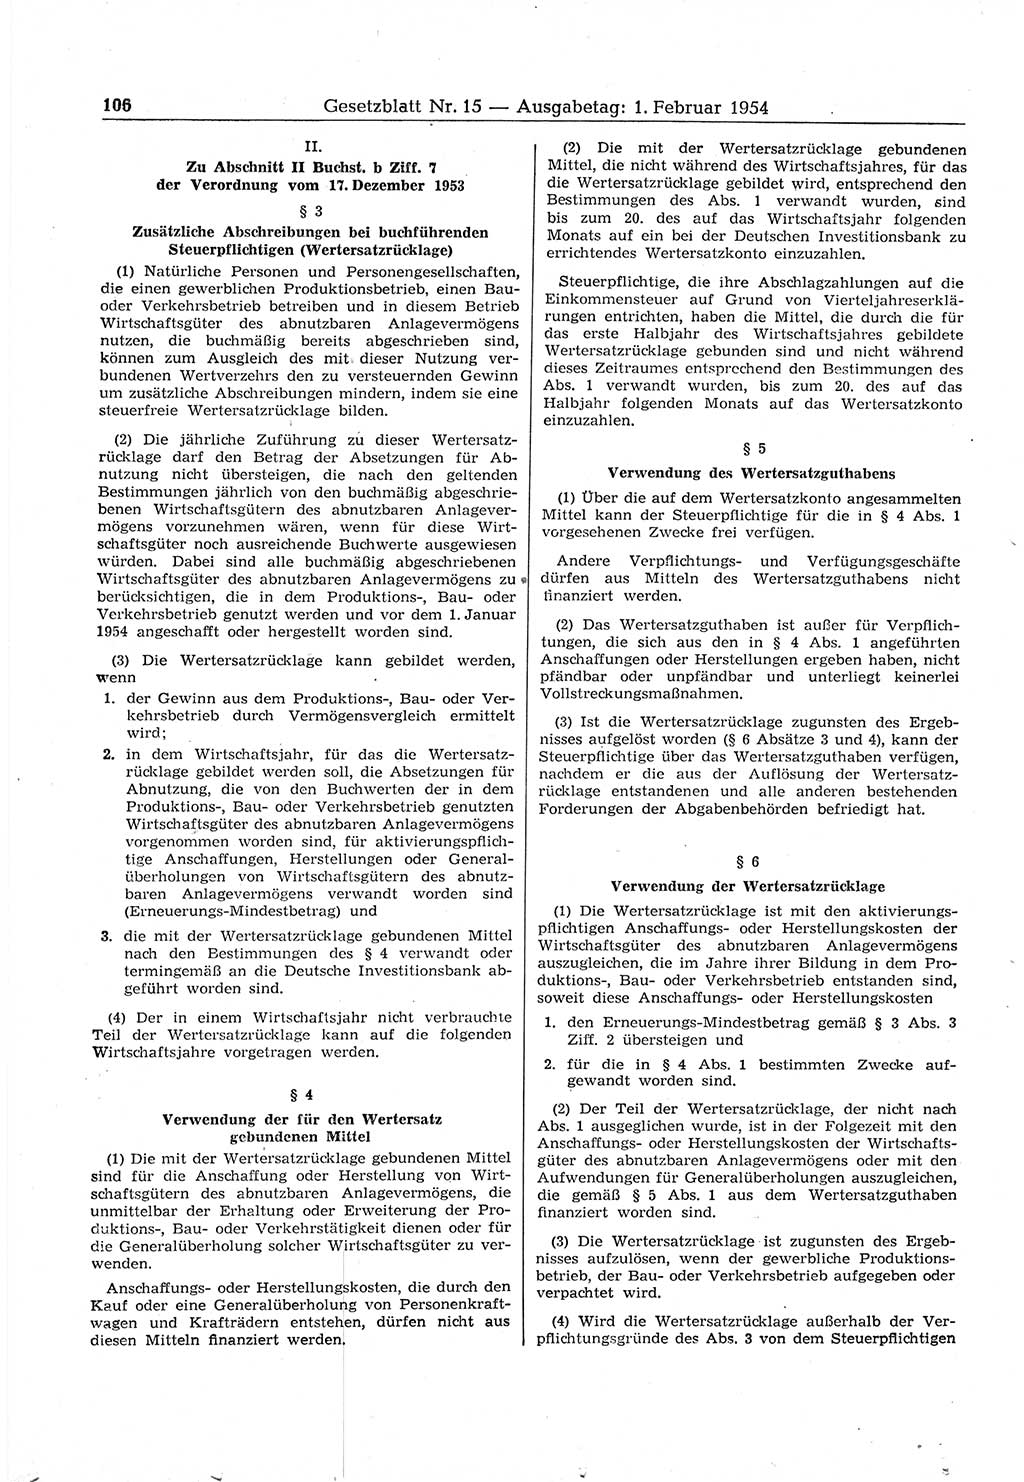 Gesetzblatt (GBl.) der Deutschen Demokratischen Republik (DDR) 1954, Seite 106 (GBl. DDR 1954, S. 106)